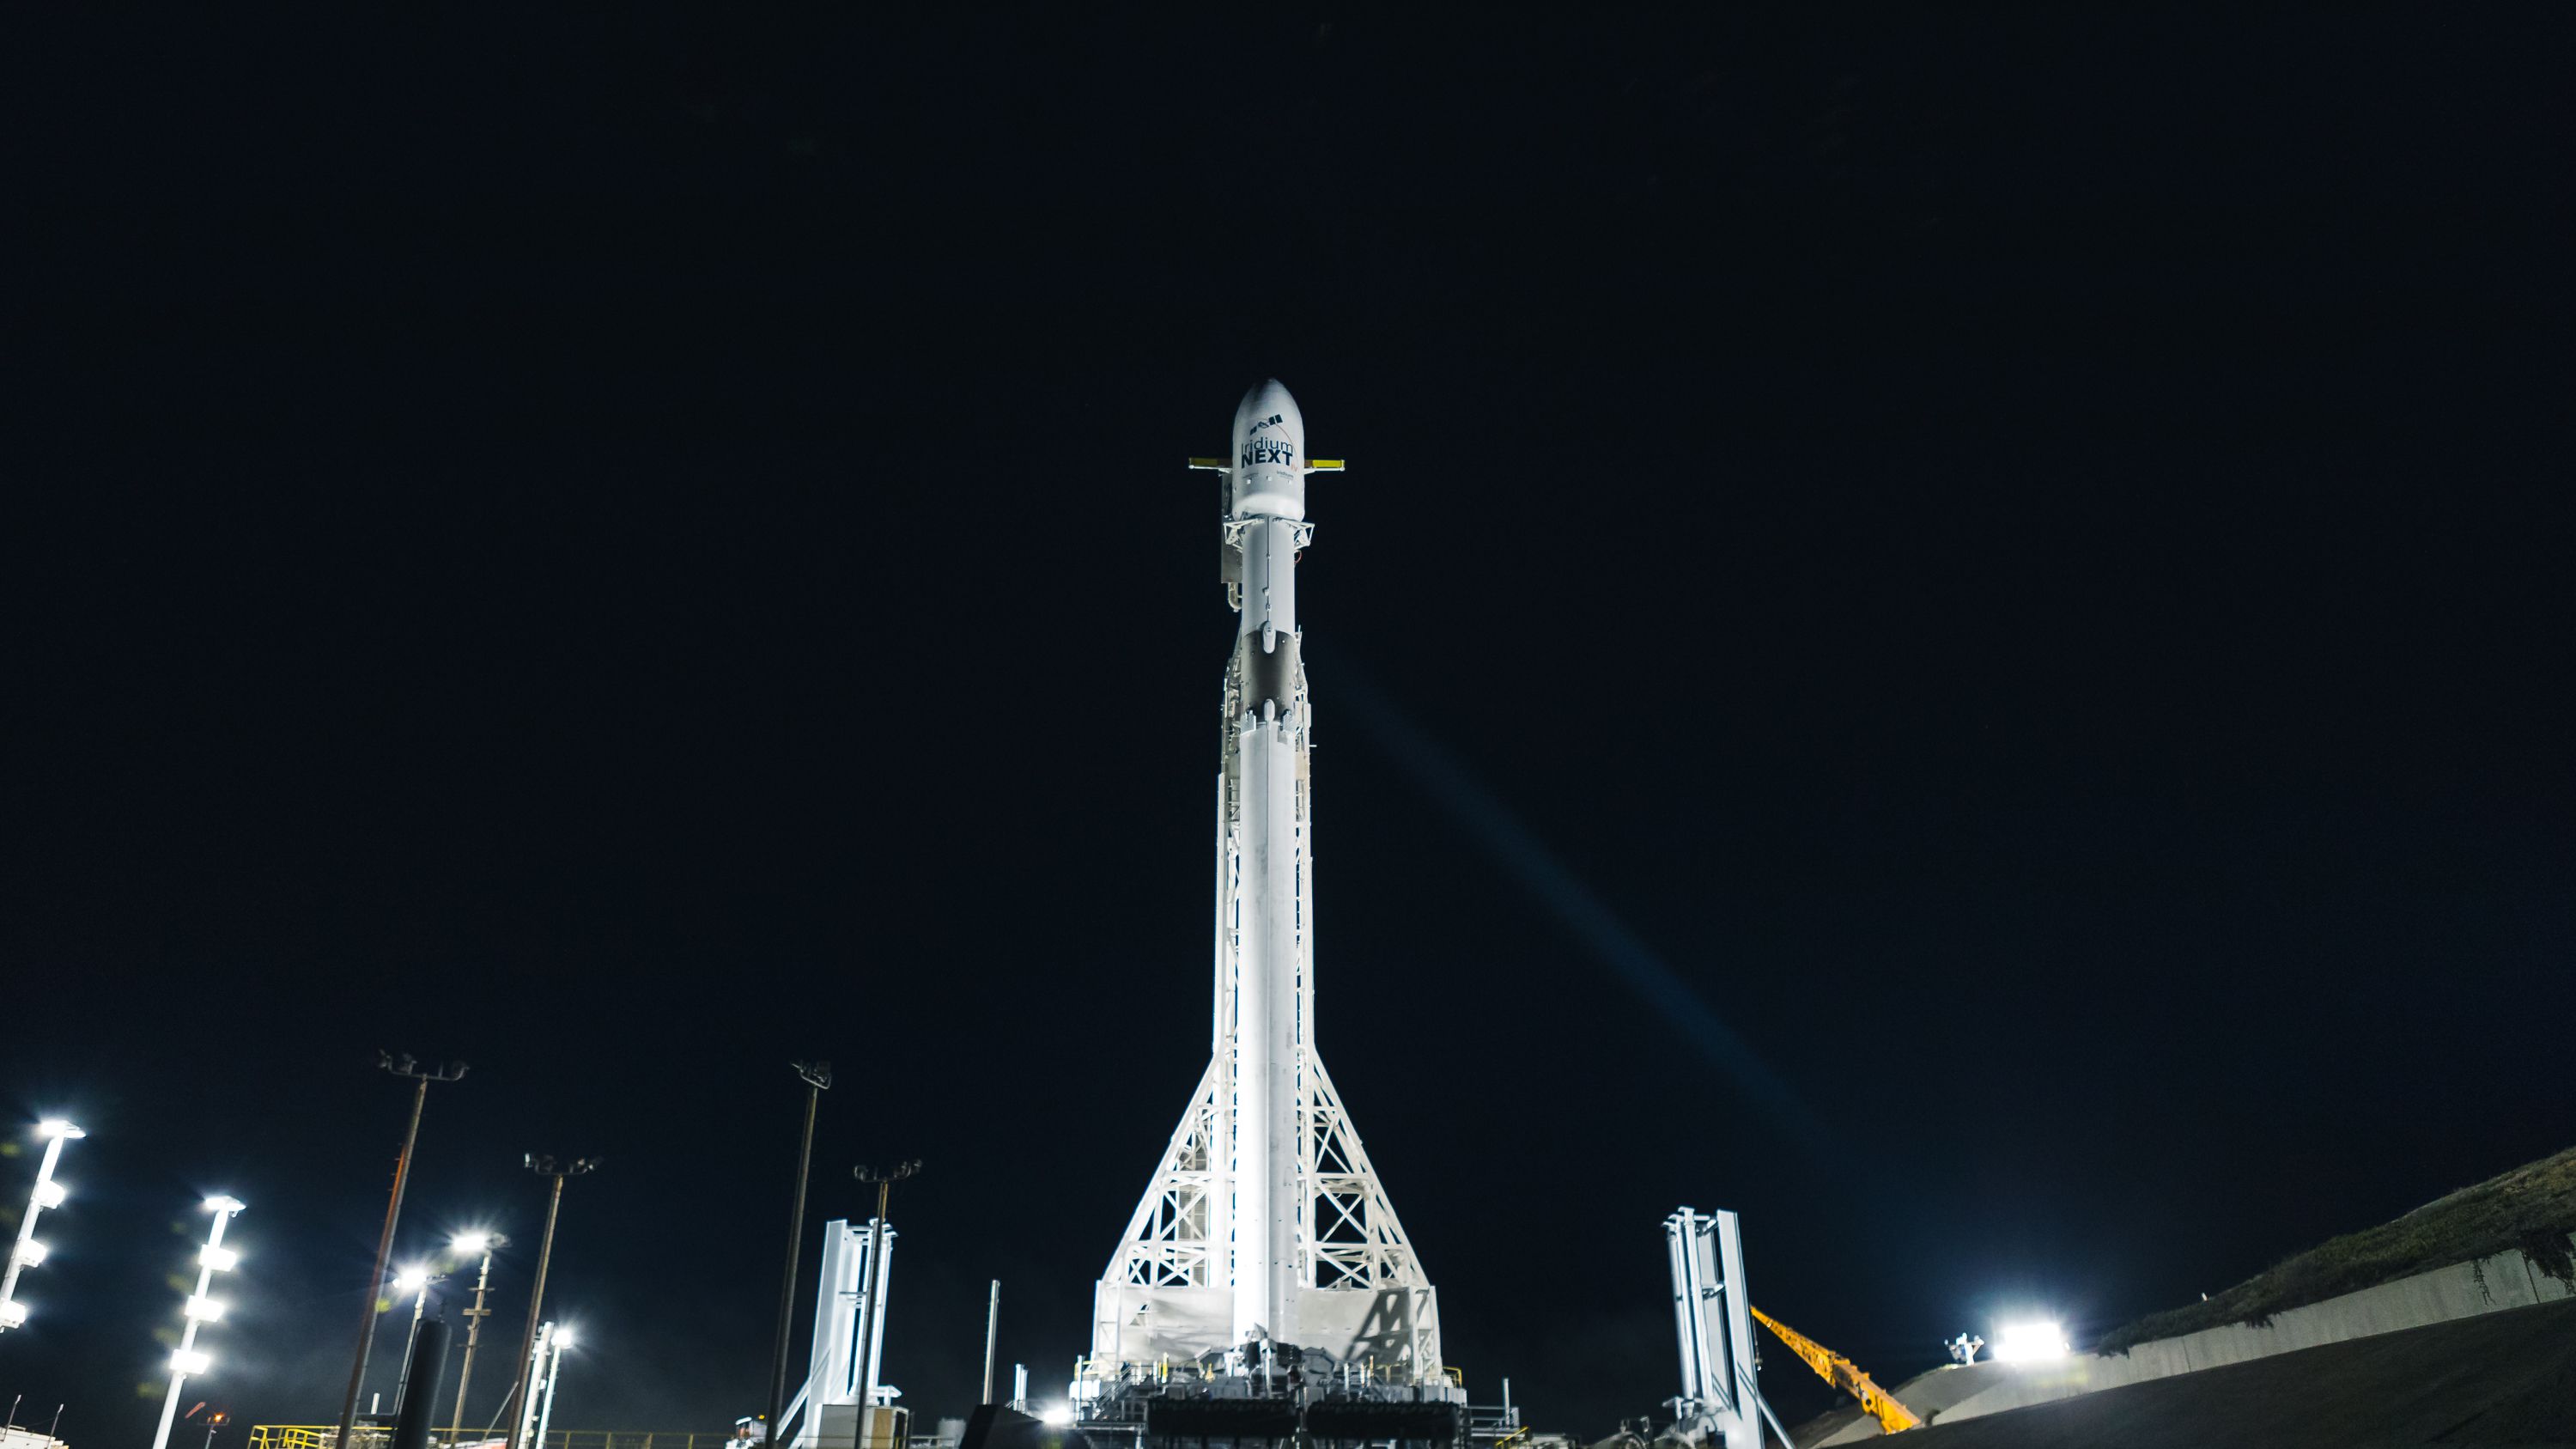 iridium4vertical (SpaceX)